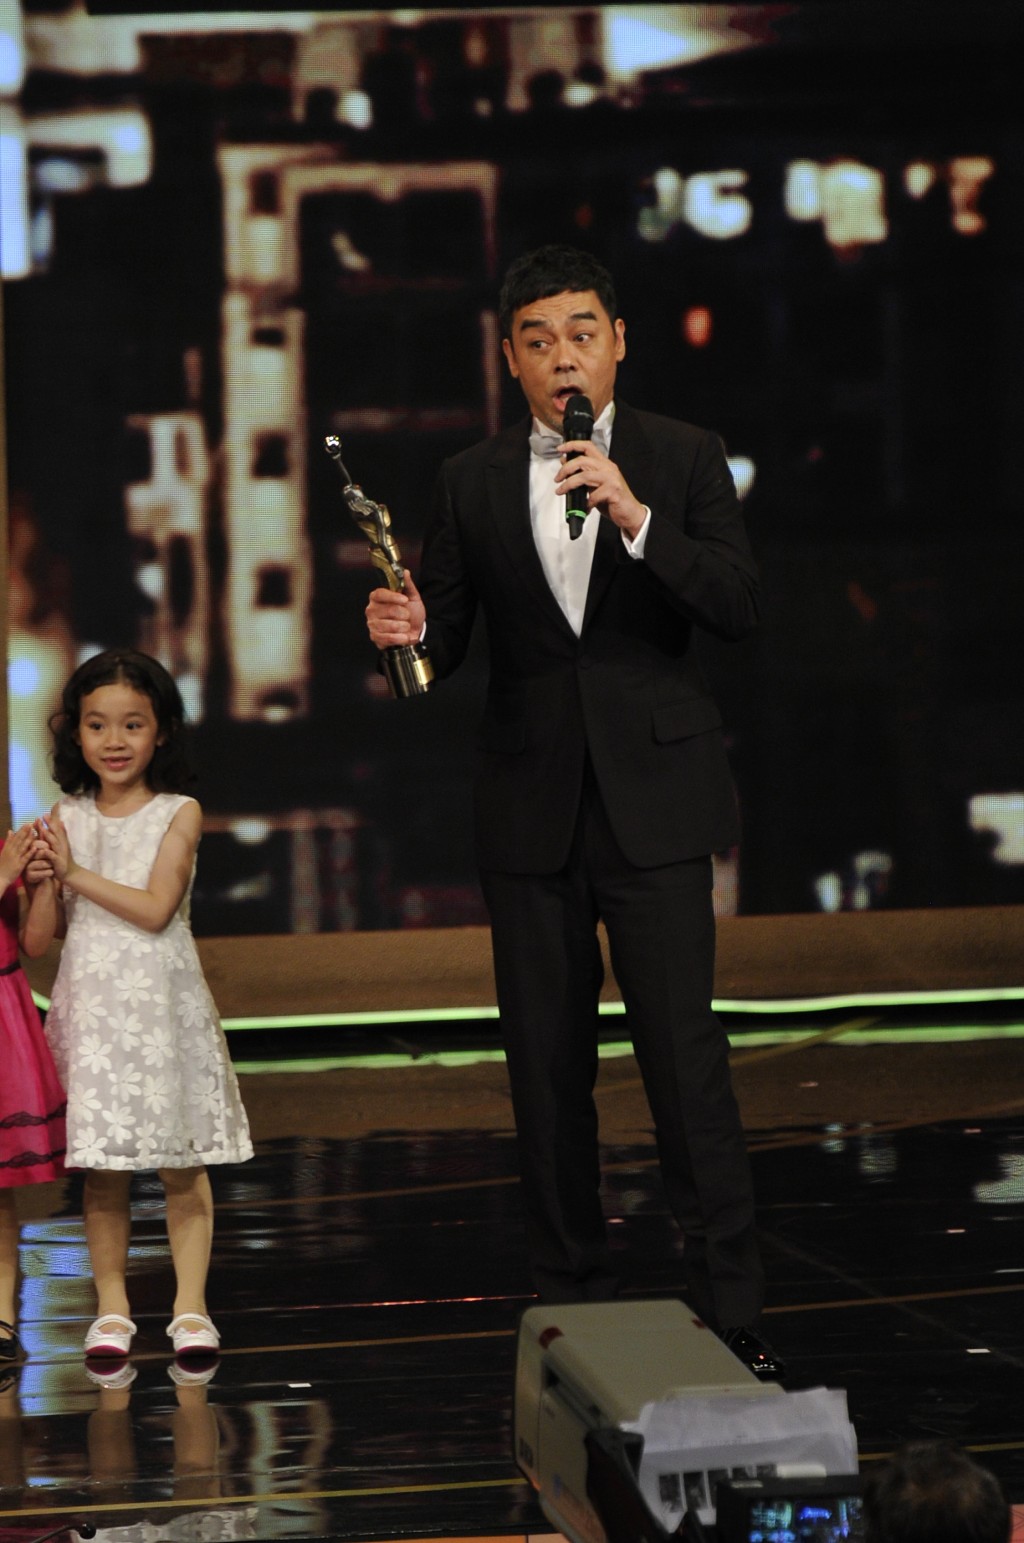 劉青雲2015年憑《竊聽風雲3》再度獲得金像獎影帝時，於台上向老婆郭藹明發表愛的宣言。